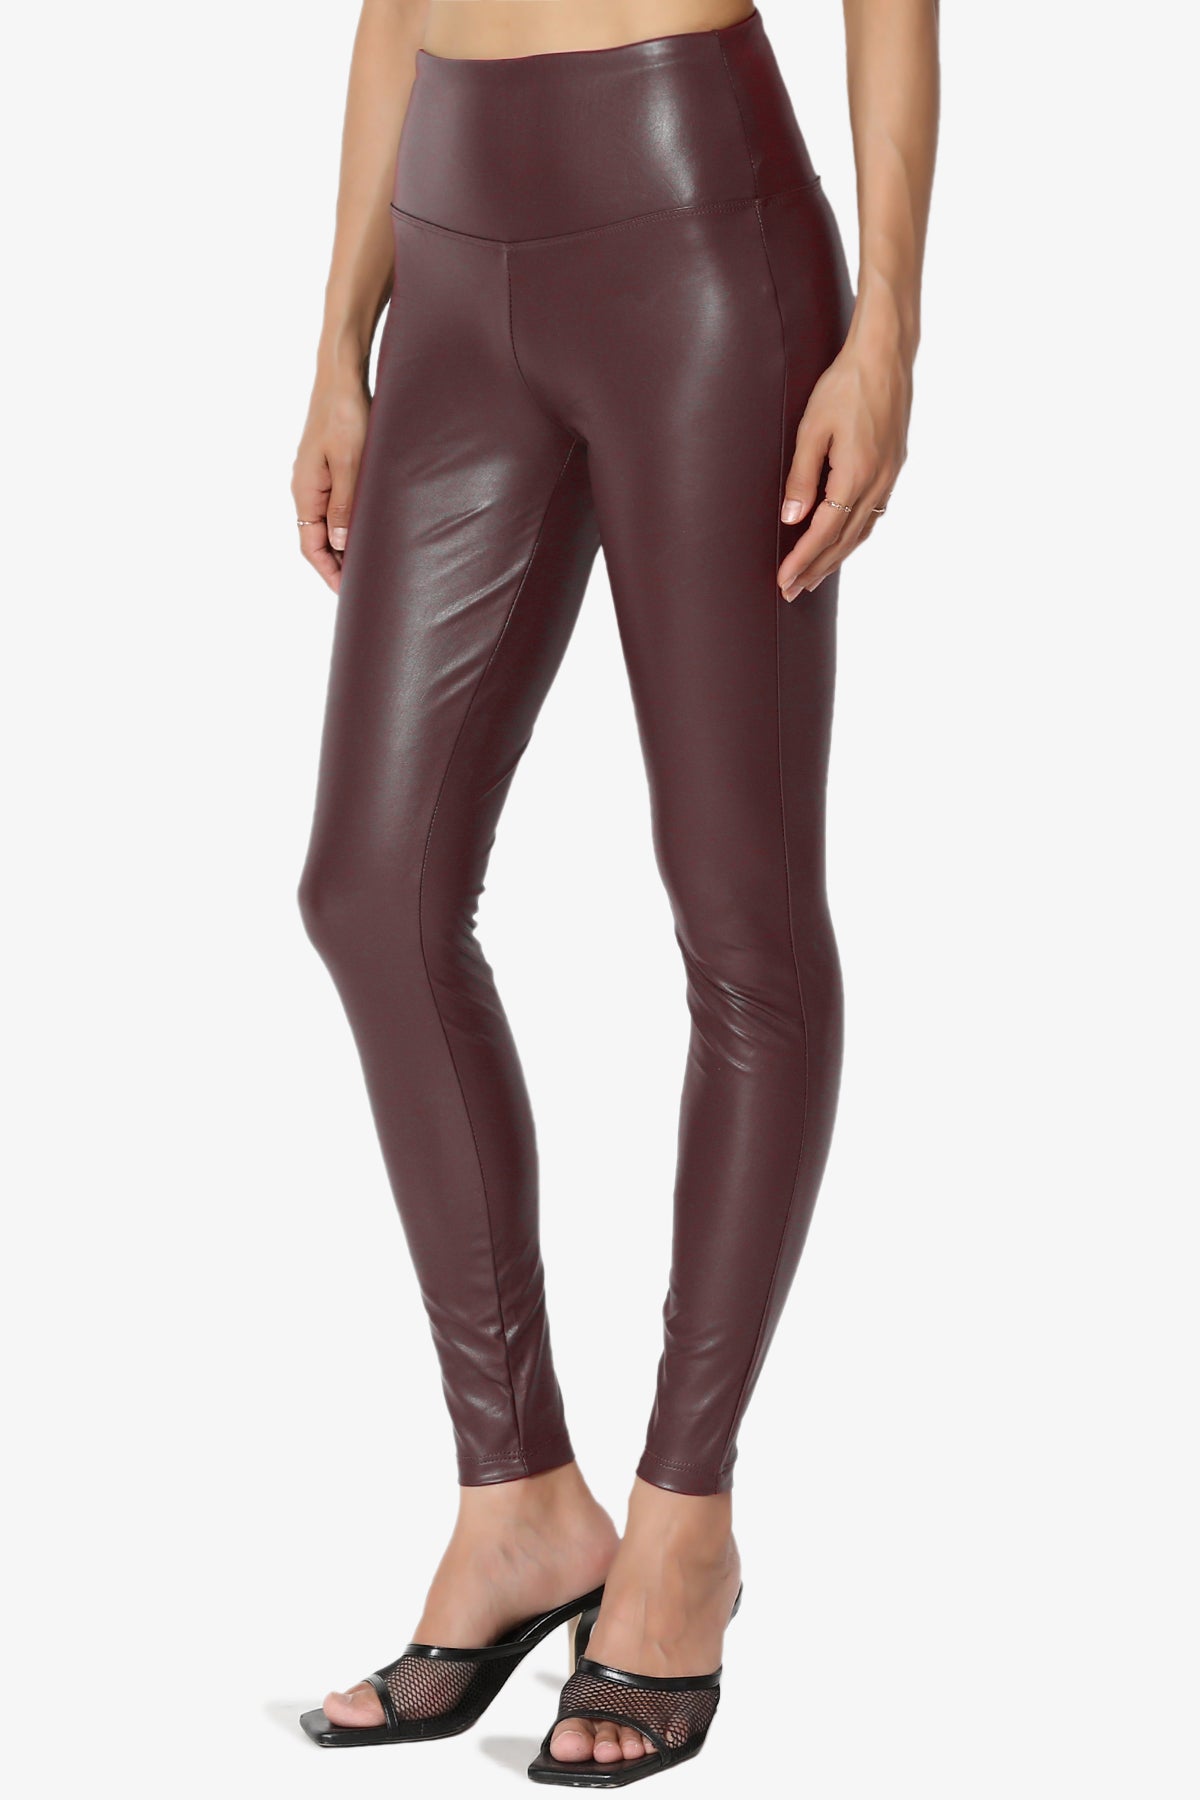 Buy N Gal Brown Leather Look Leggings - Leggings for Women 5617067 | Myntra